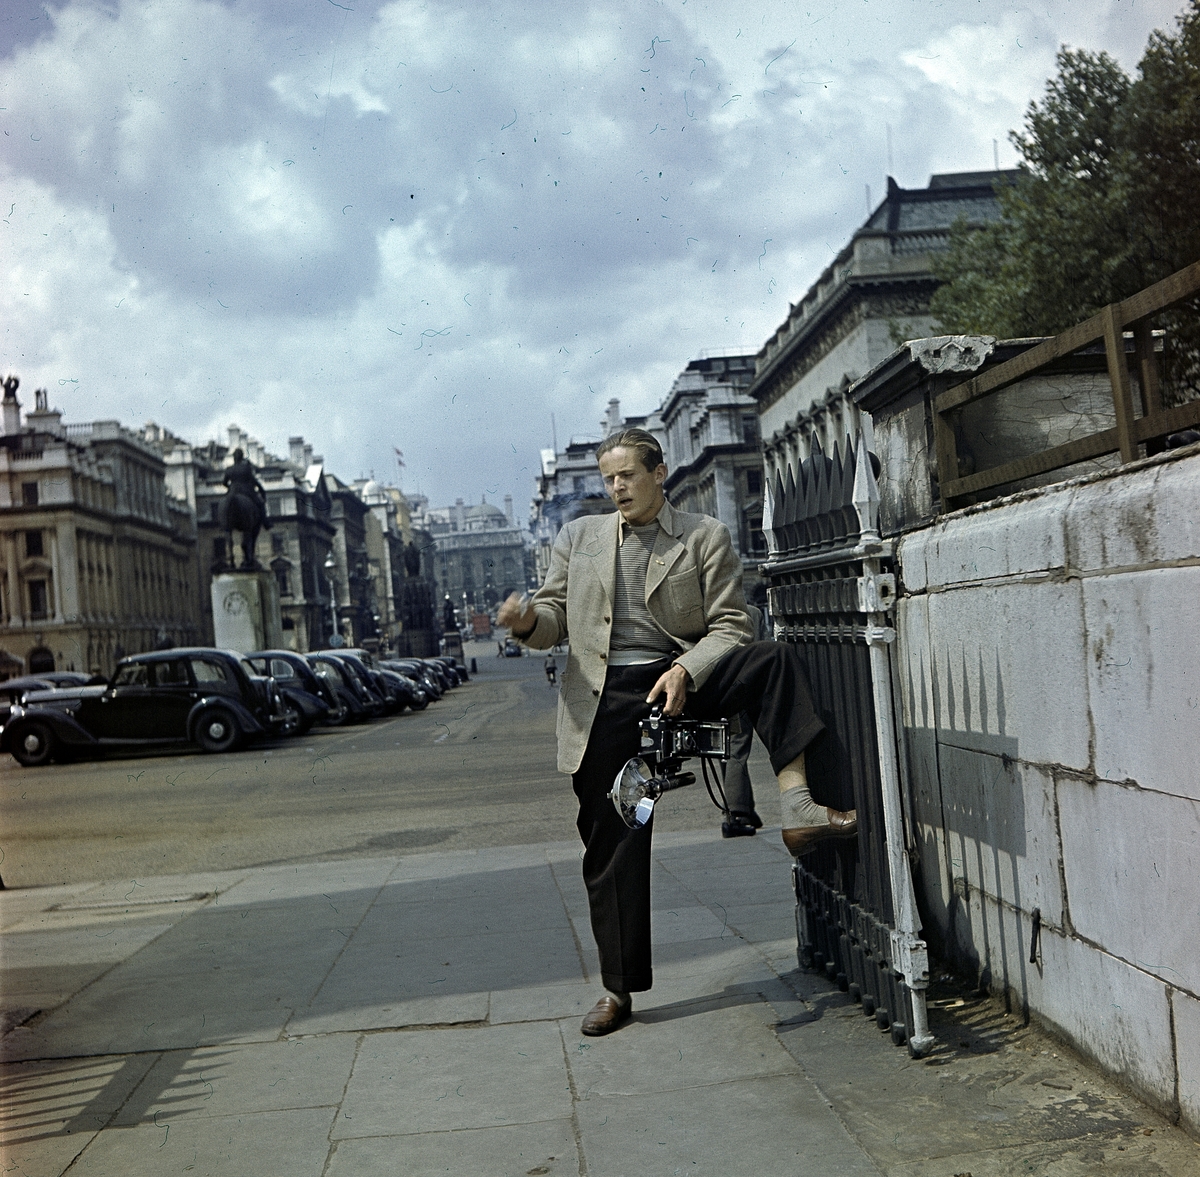 Fotografen Hans Malmberg med kameran i ena handen och en cigarett i den andra. Stadsmiljö.